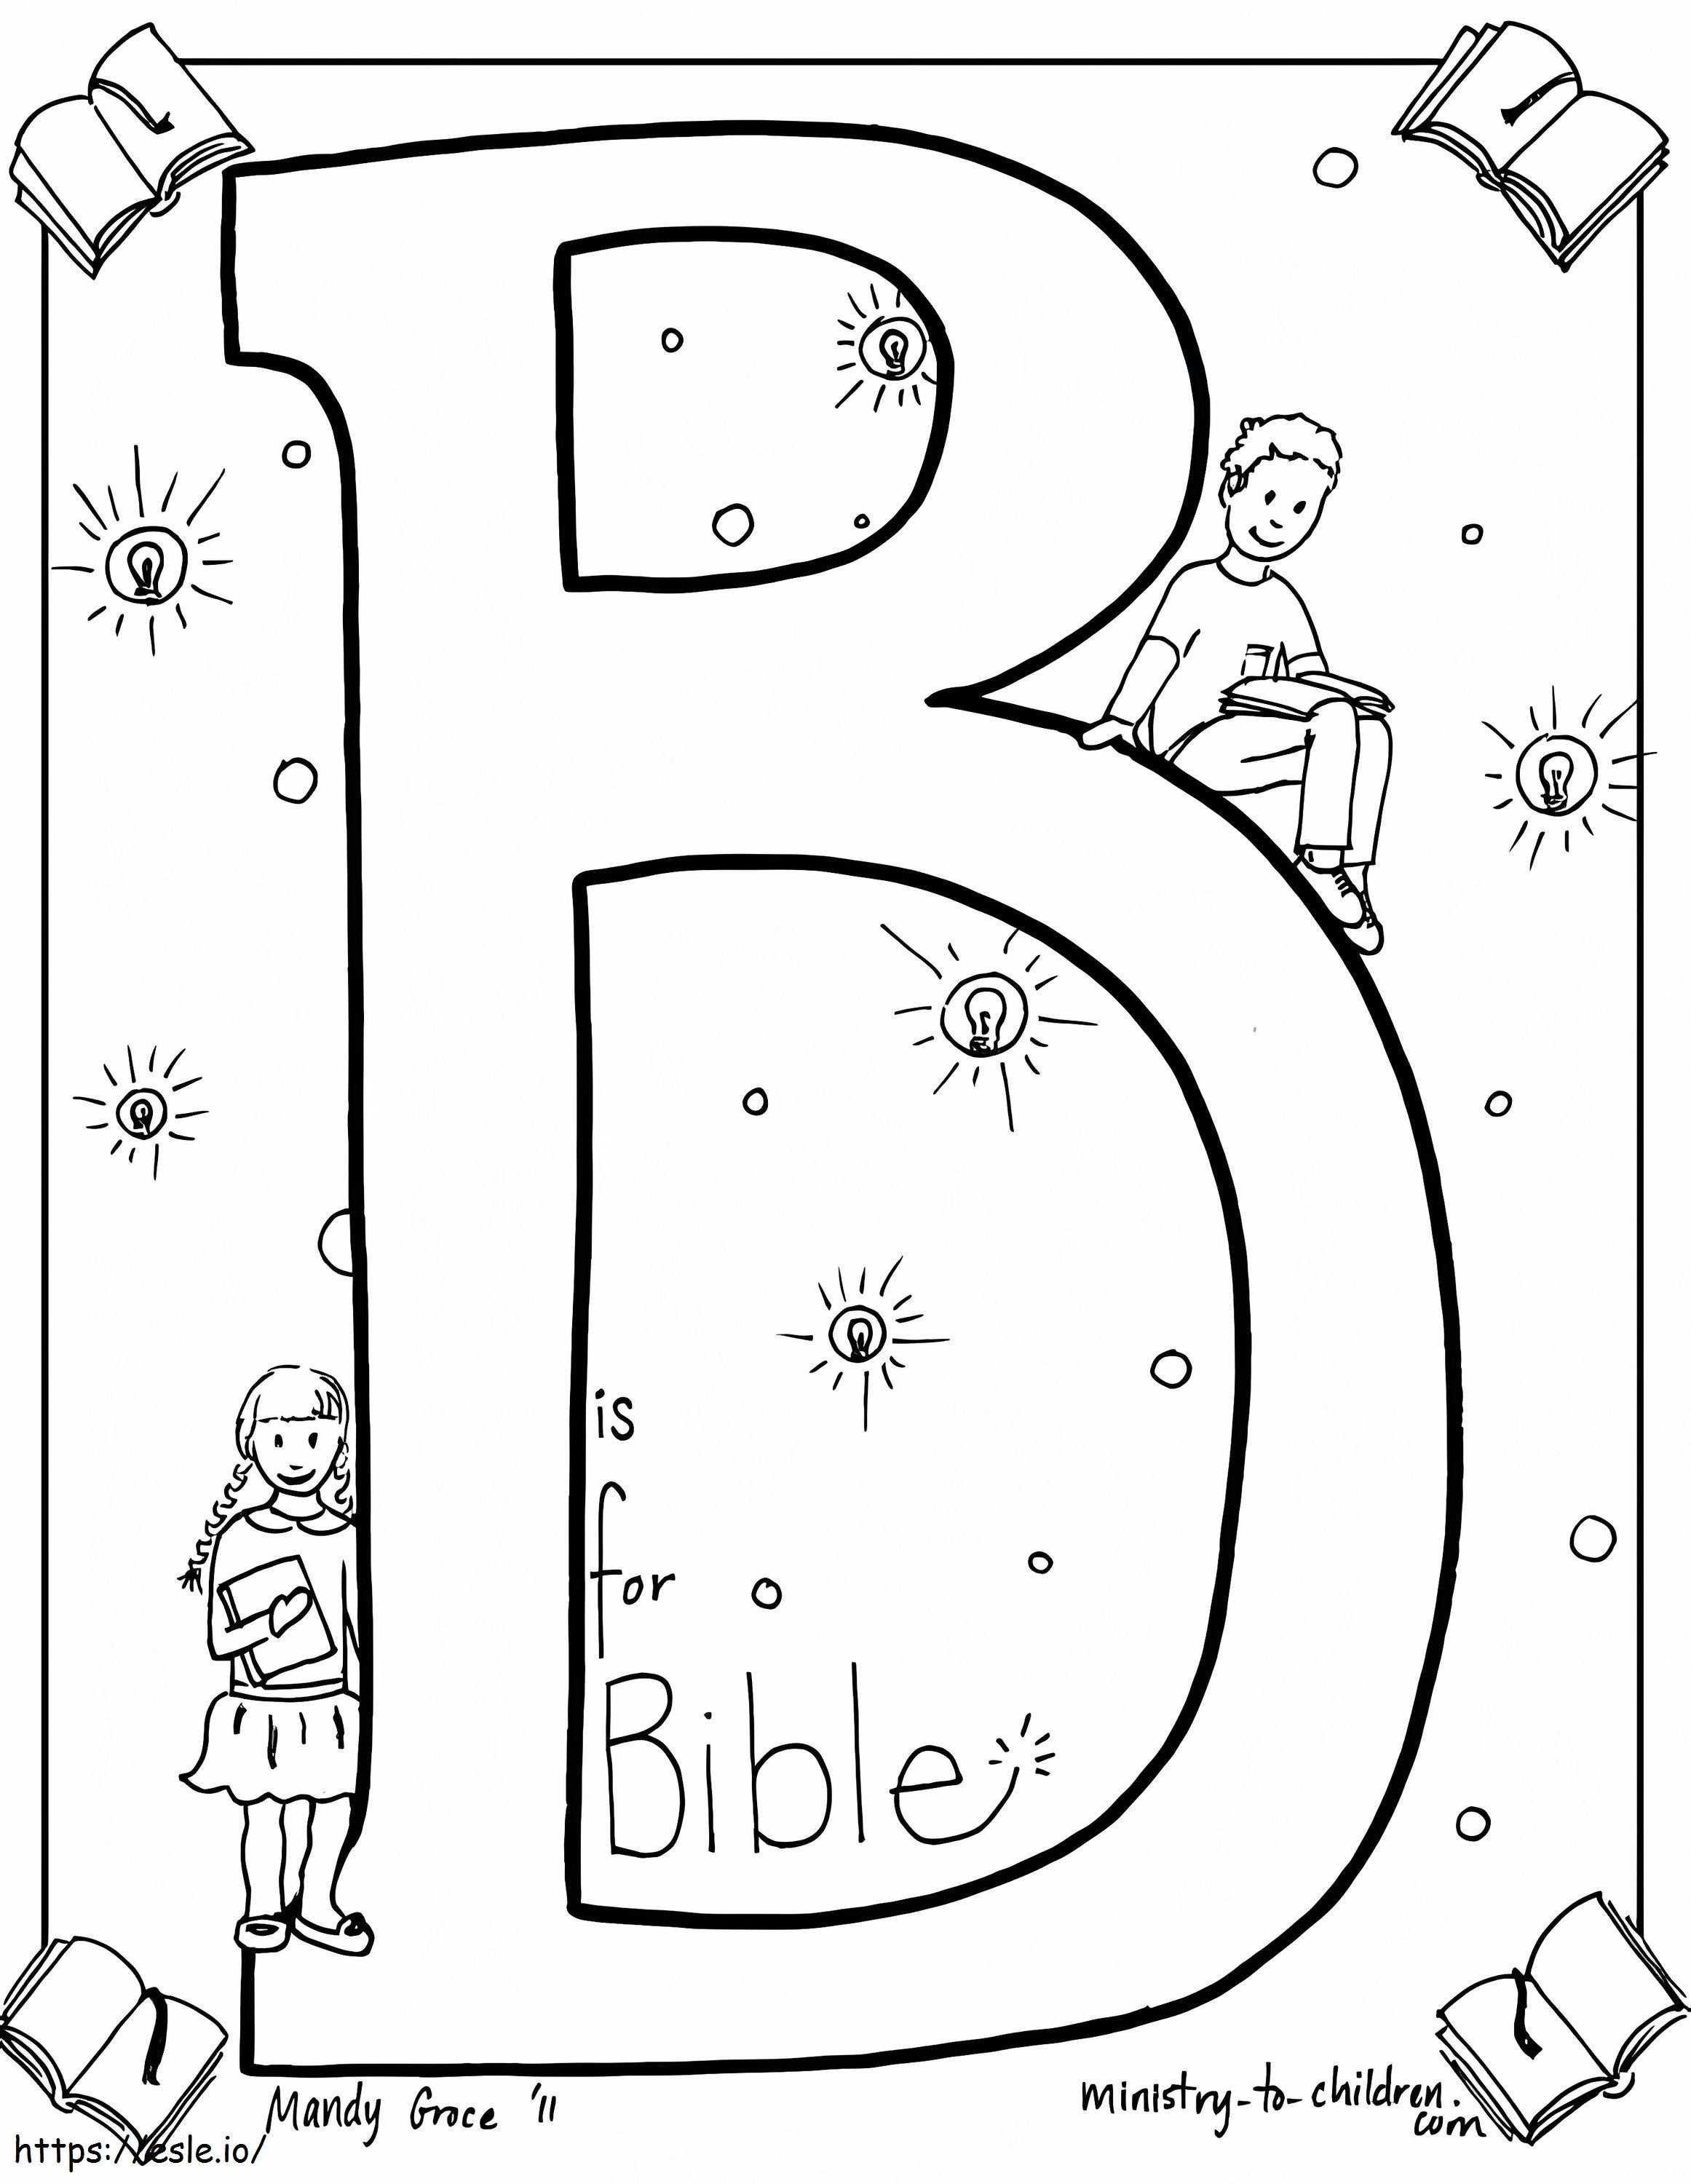 B oznacza Biblię kolorowanka